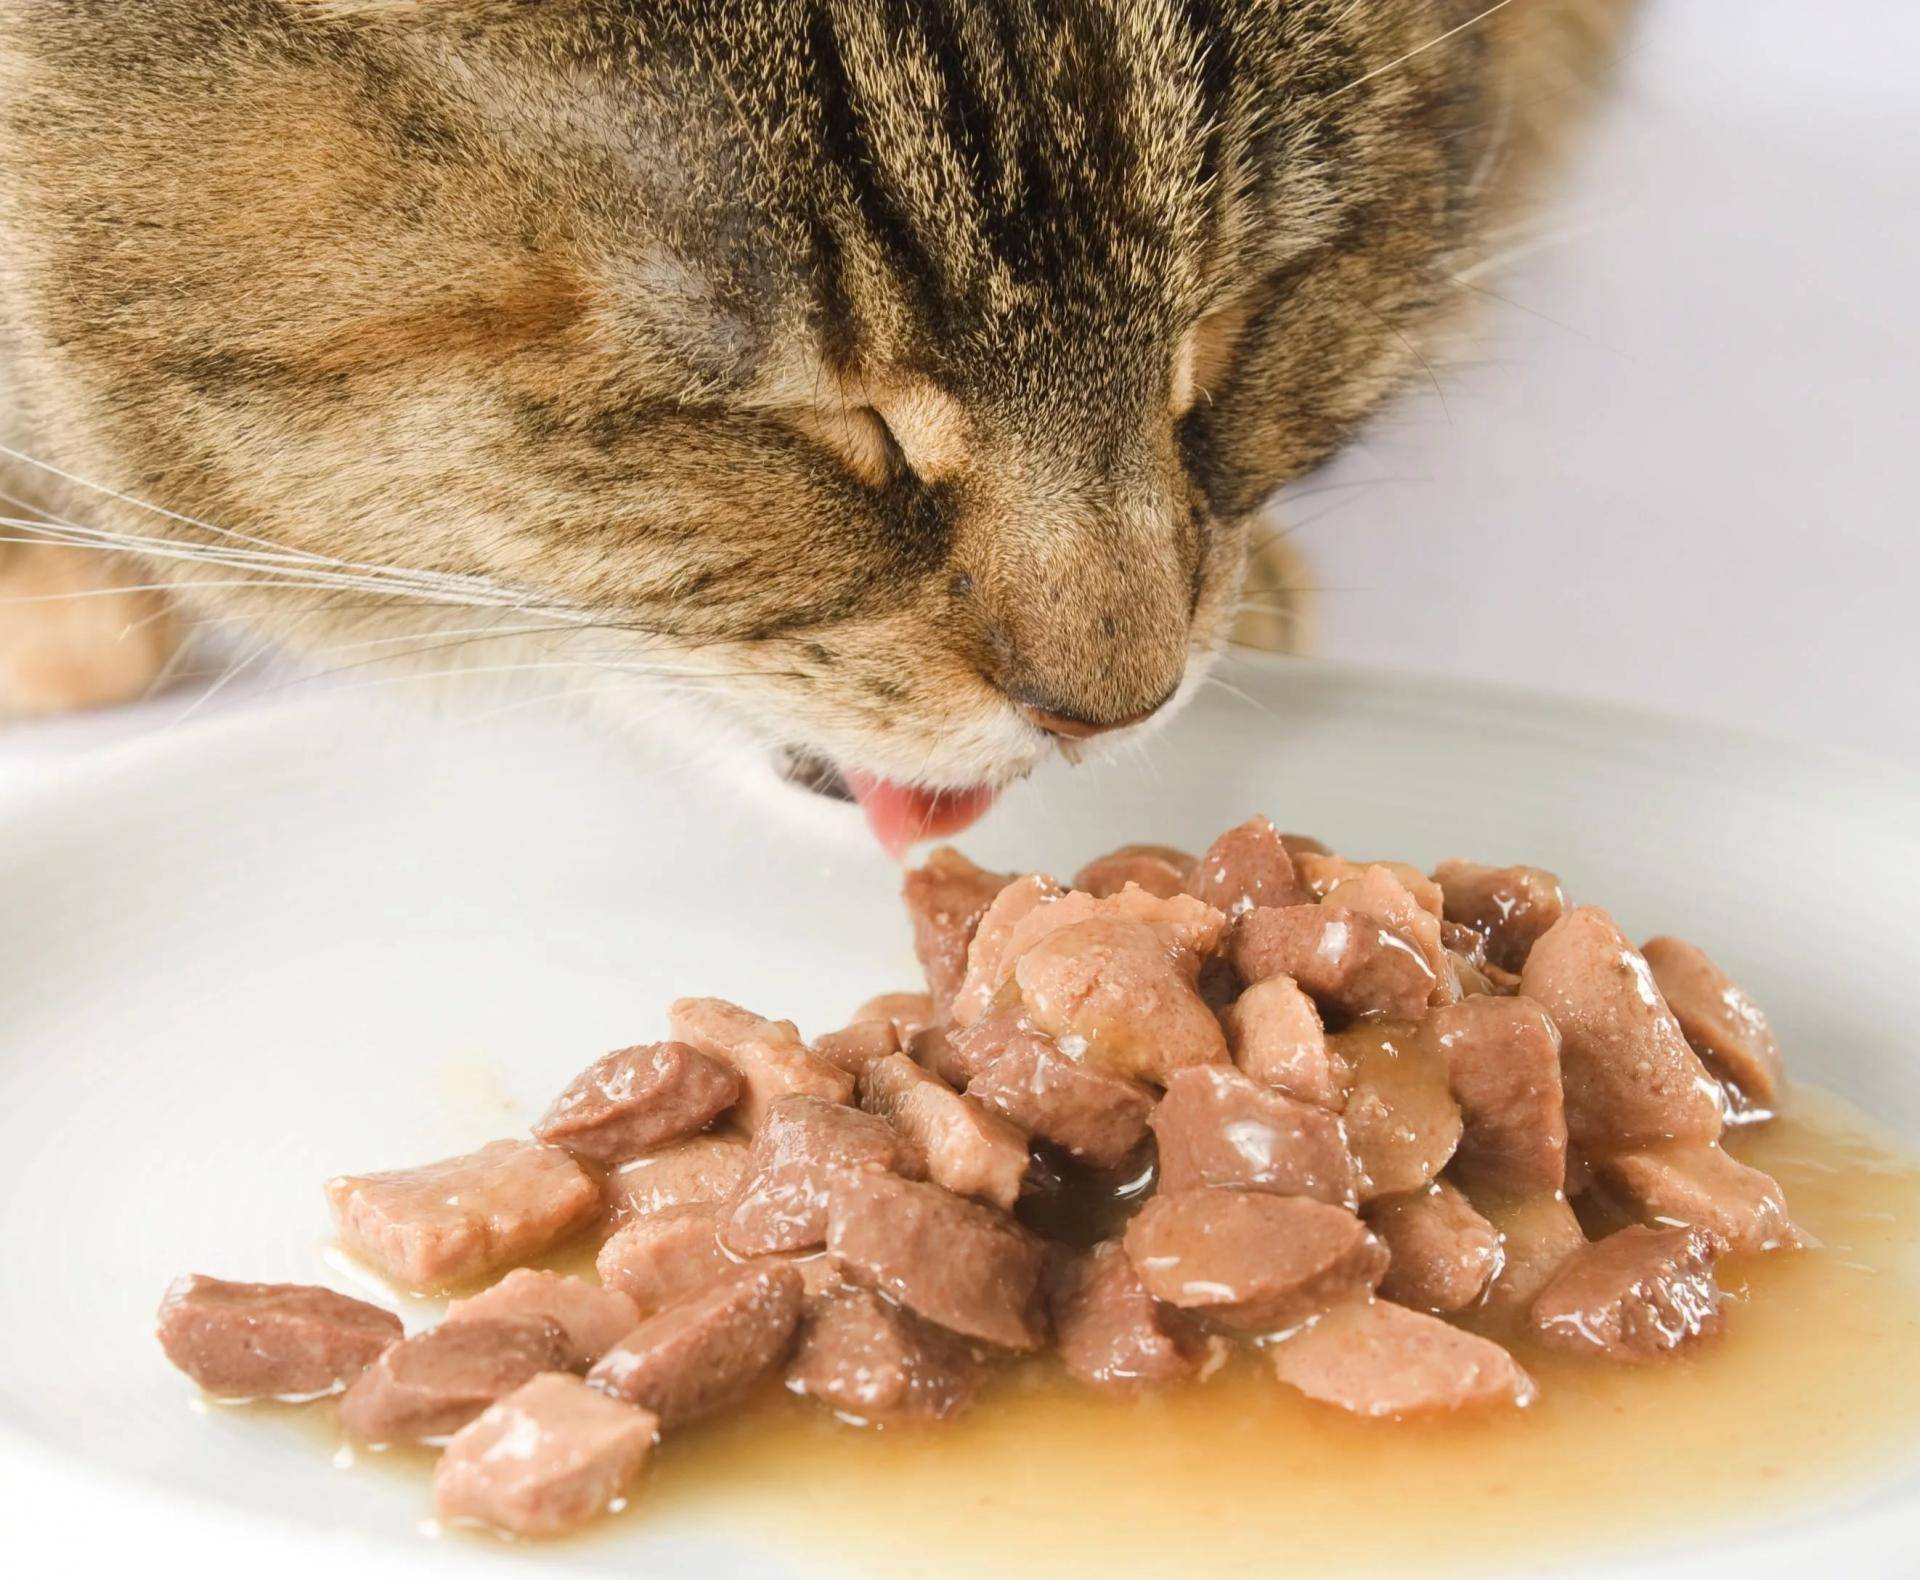 Что делать, если котенок ничего не ест?